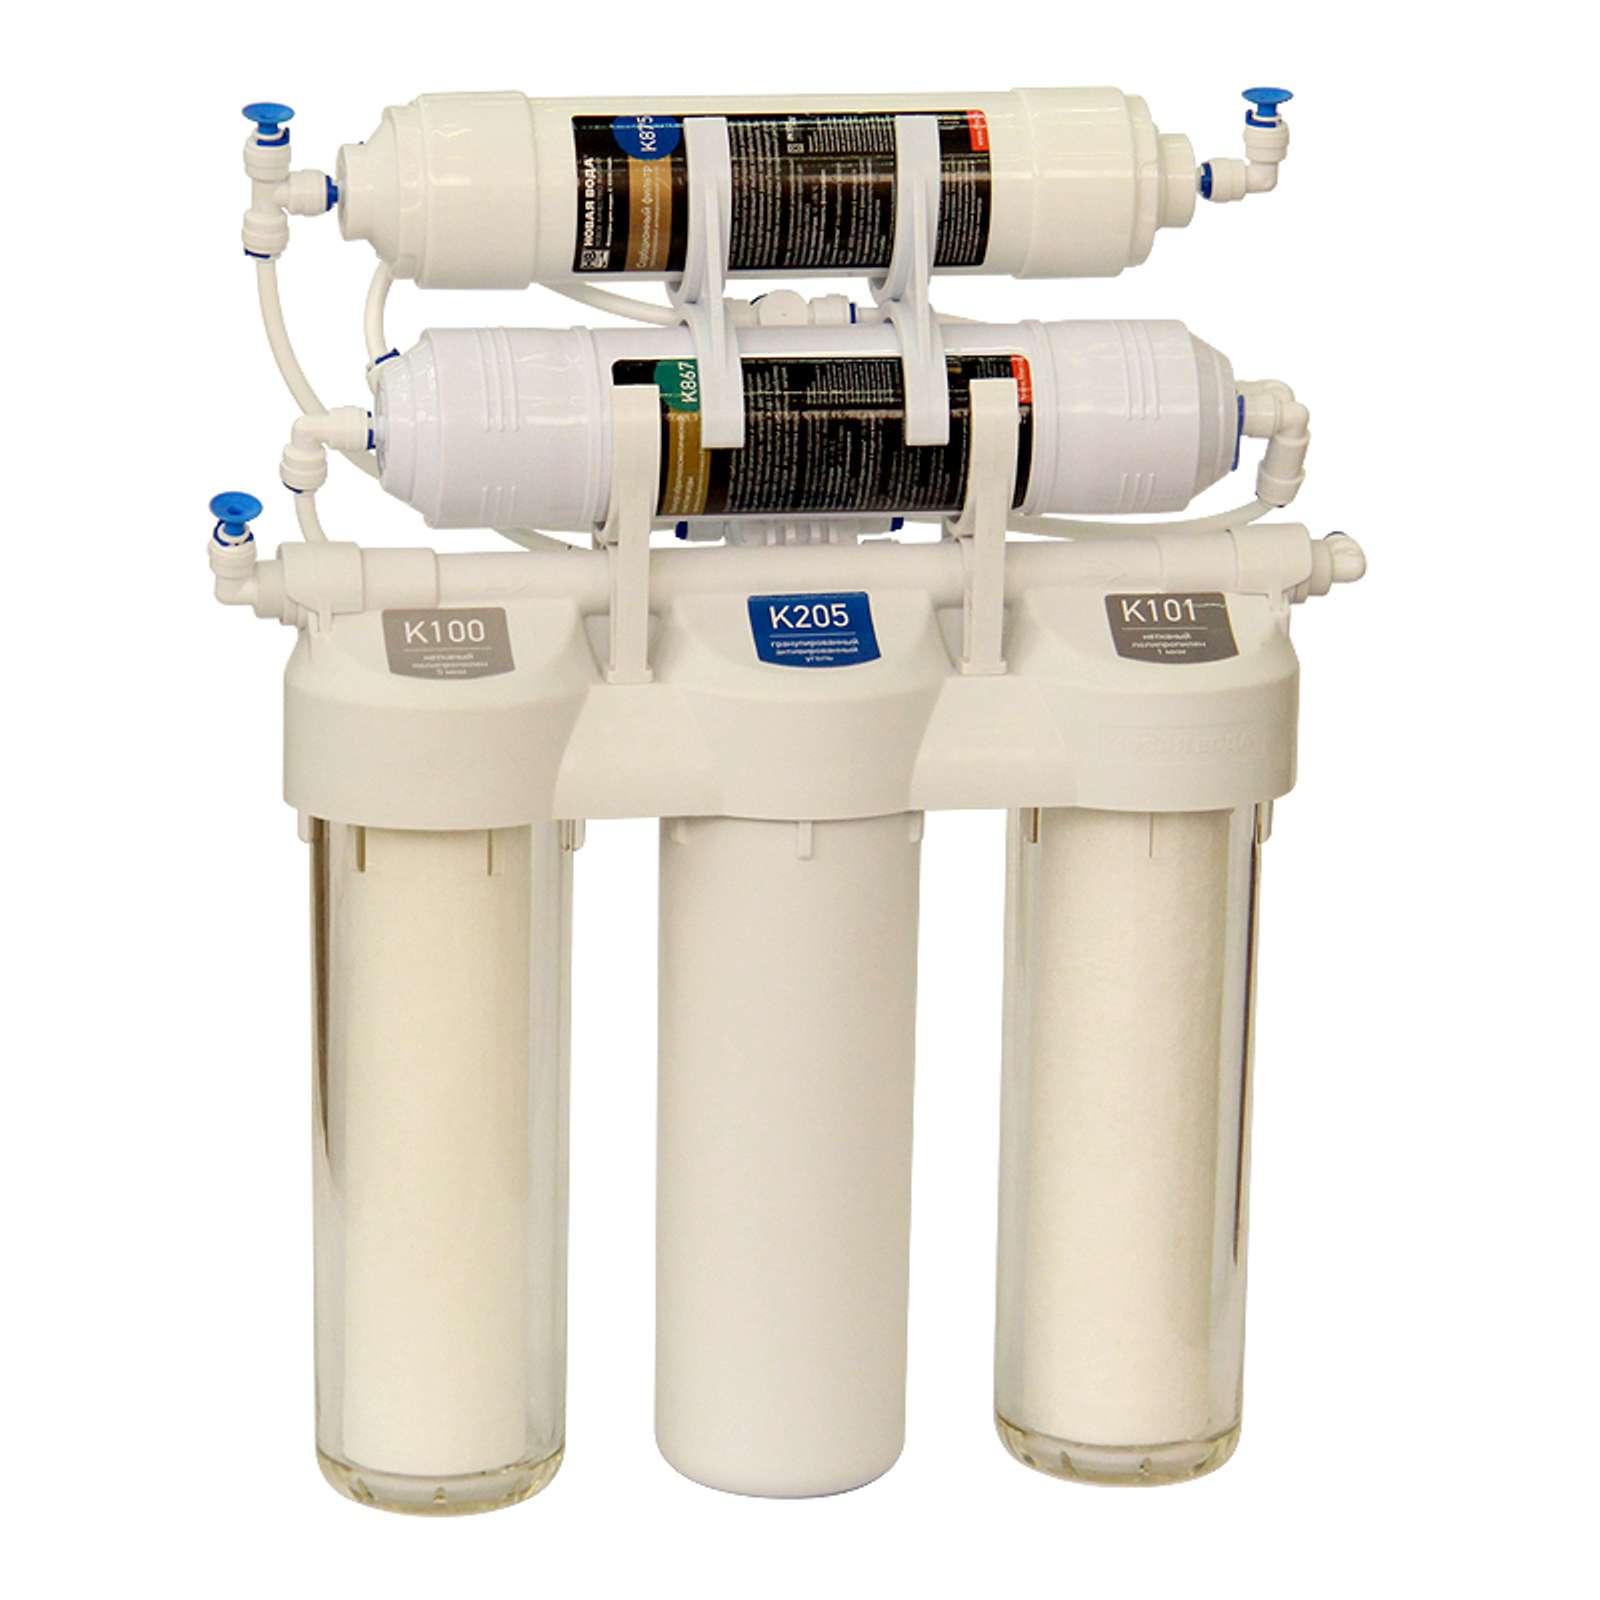 Новая вода 200. Praktic eu300. Проточный фильтр для воды 1/2 Гейзер. Фильтр новая вода с обратным осмосом. Фильтр для воды проточный Atoll.